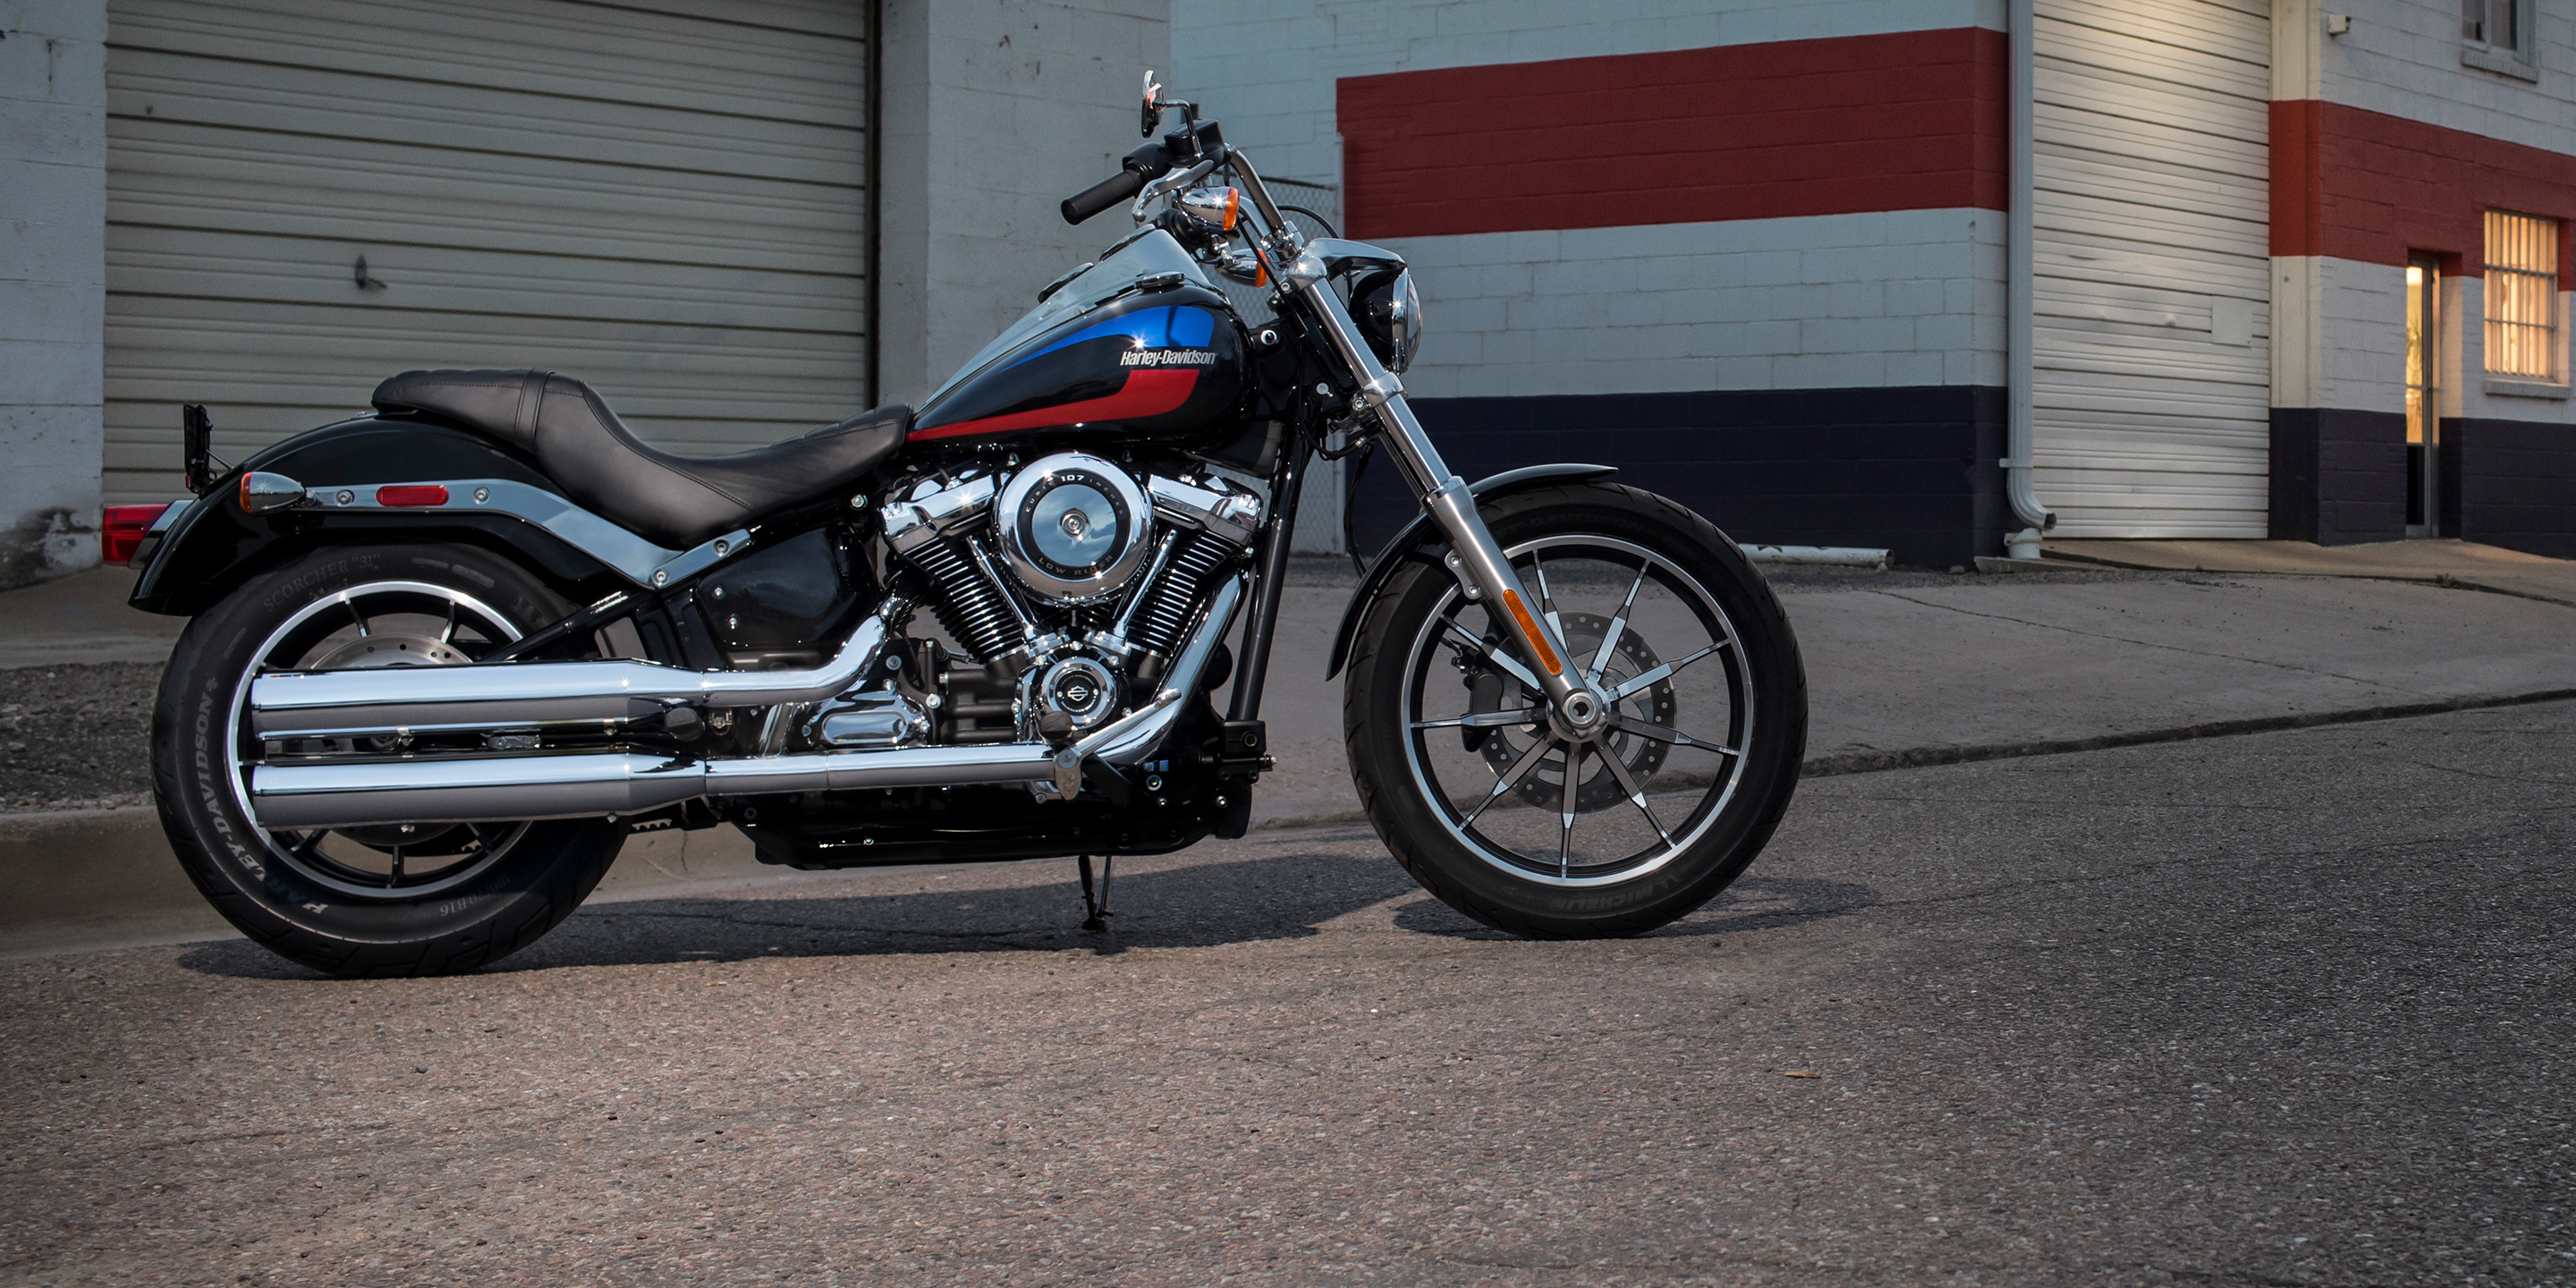 2019 Low  Rider  Motorcycle Harley Davidson  USA